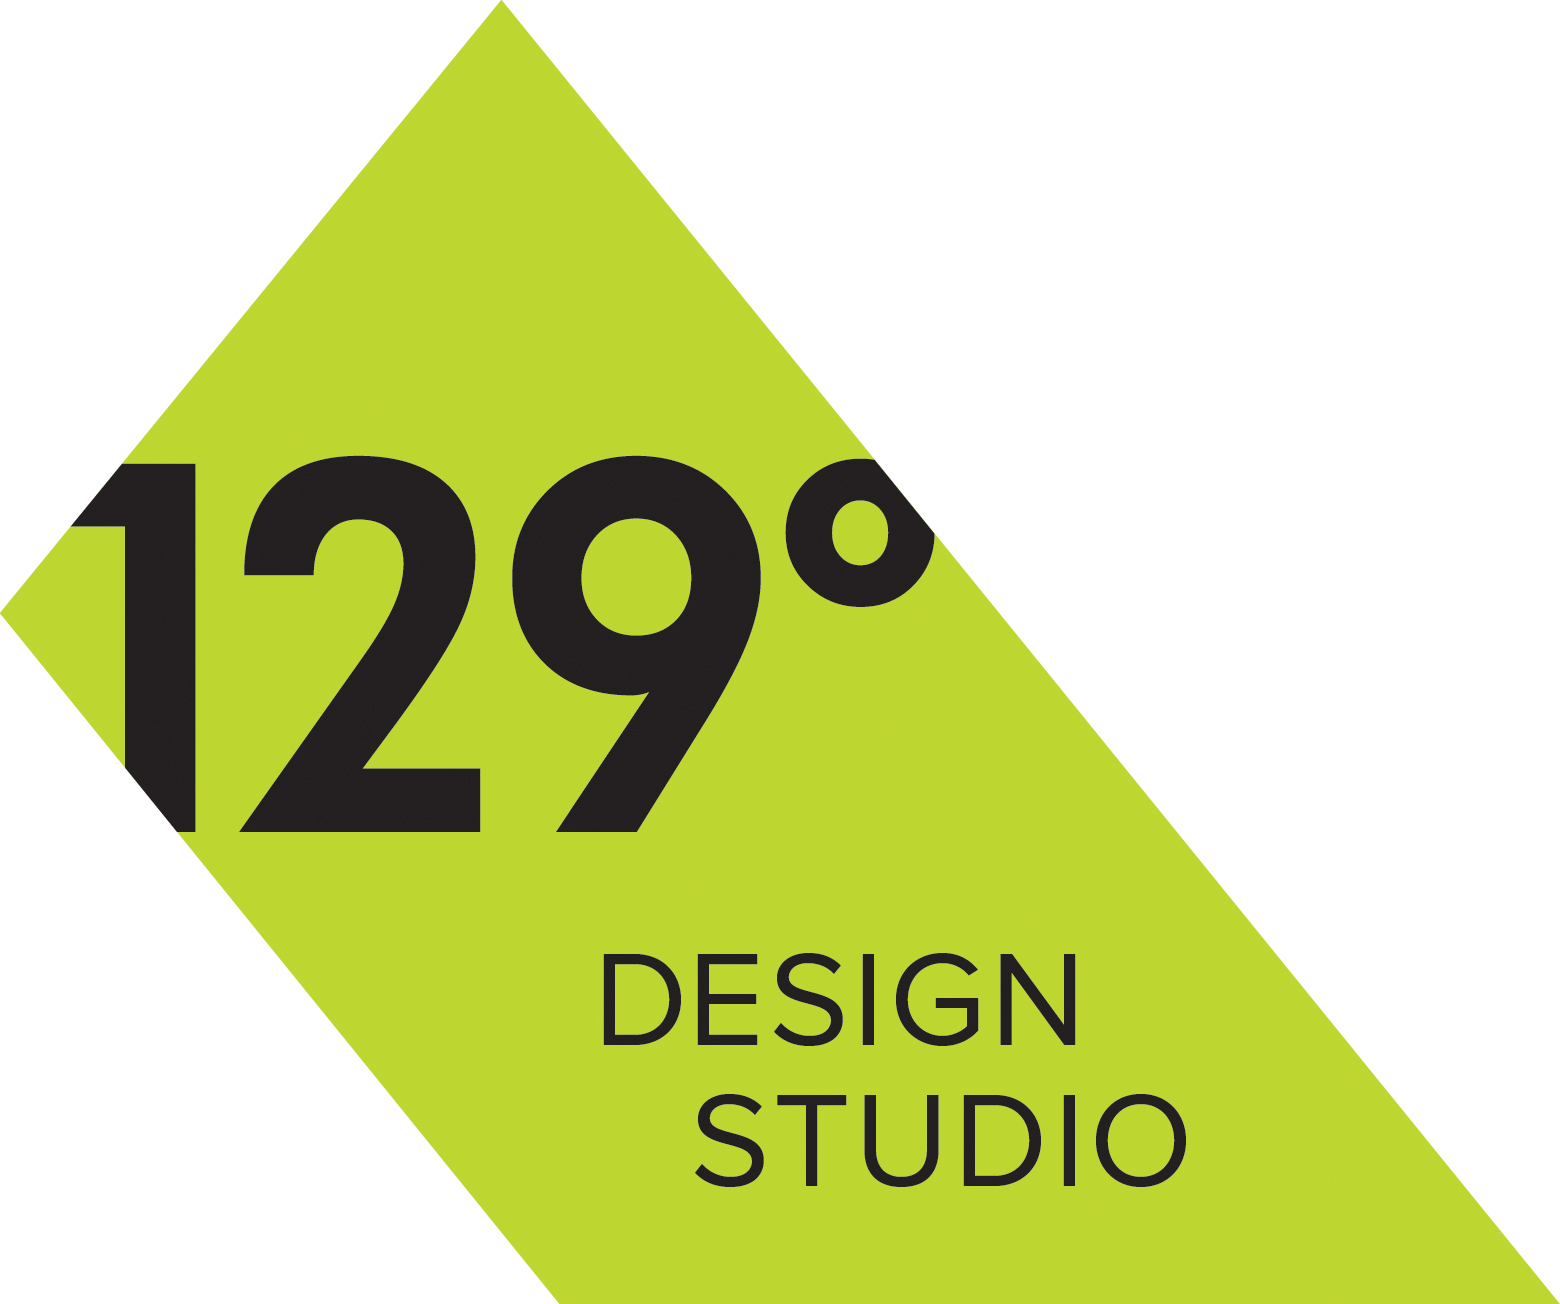 129 Degrees Design Studio